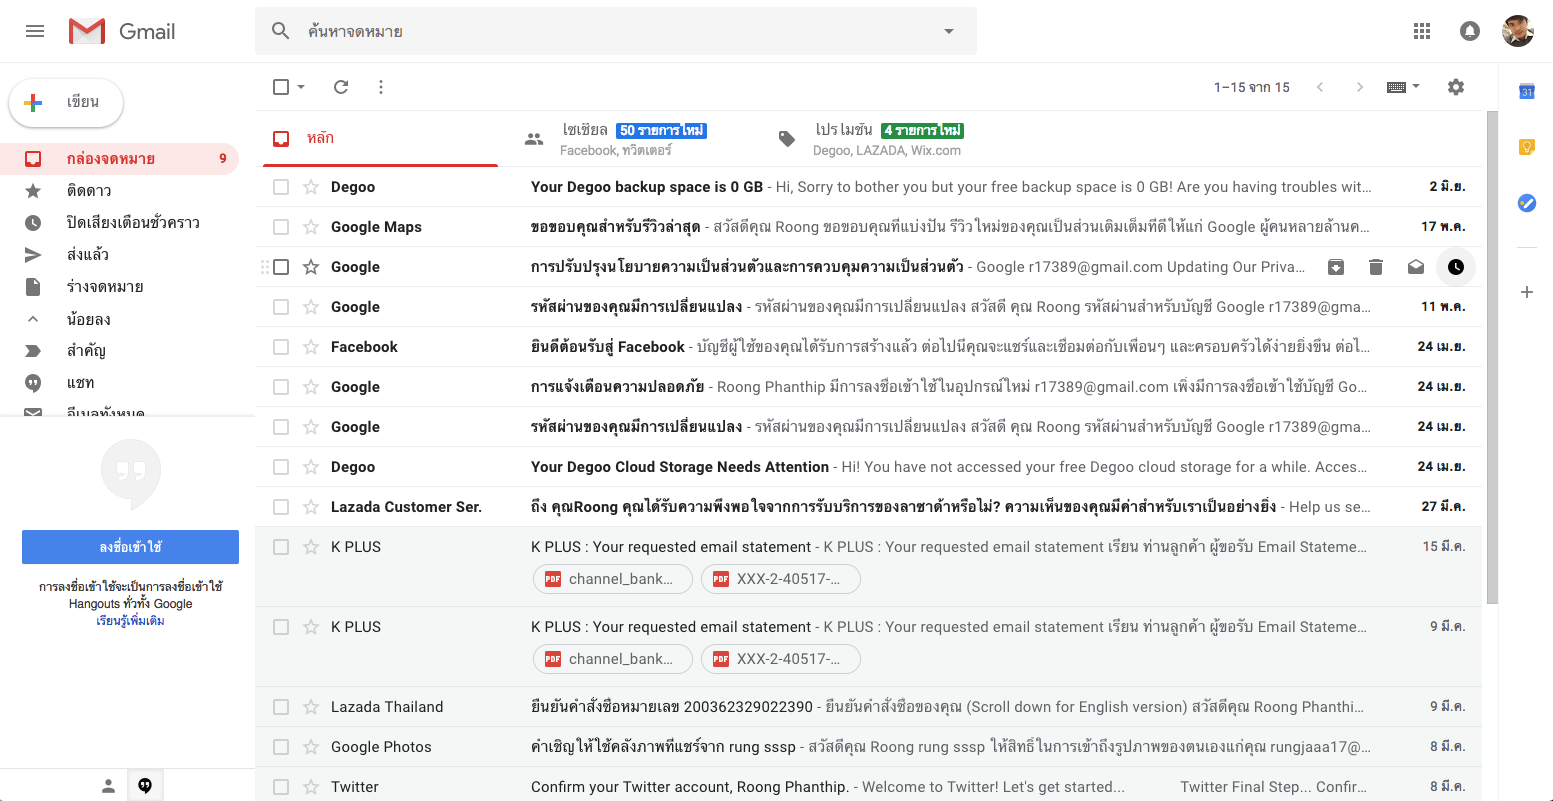 แนะนำฟีเจอร์ใหม่บน Gmail ที่เน้นความสะดวกสบายและความปลอดภัยที่มากขึ้น